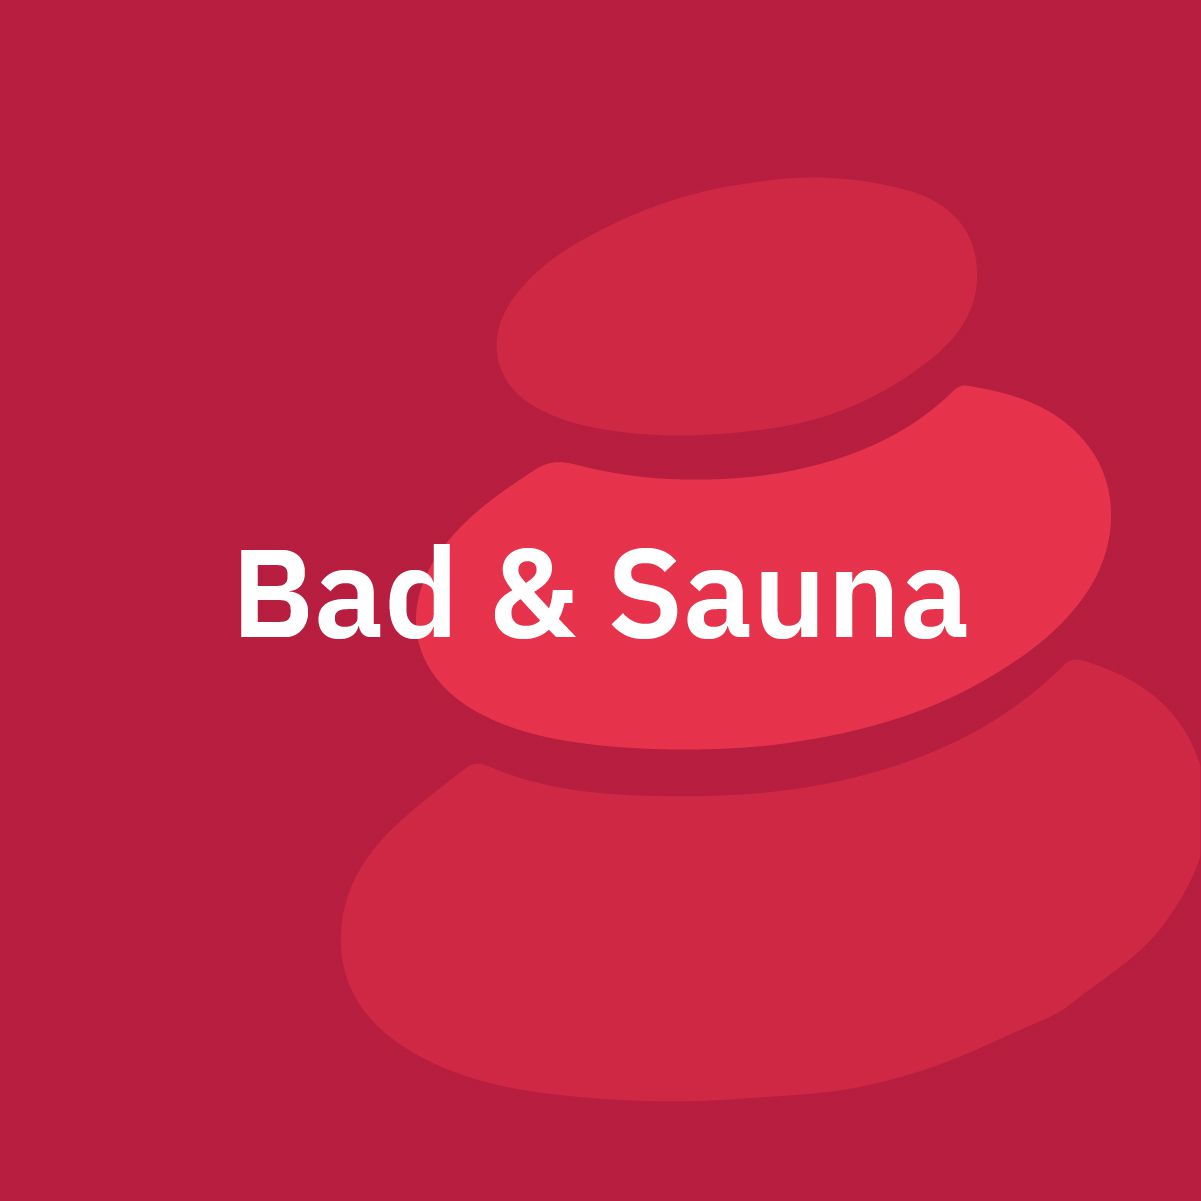 Bad & Sauna